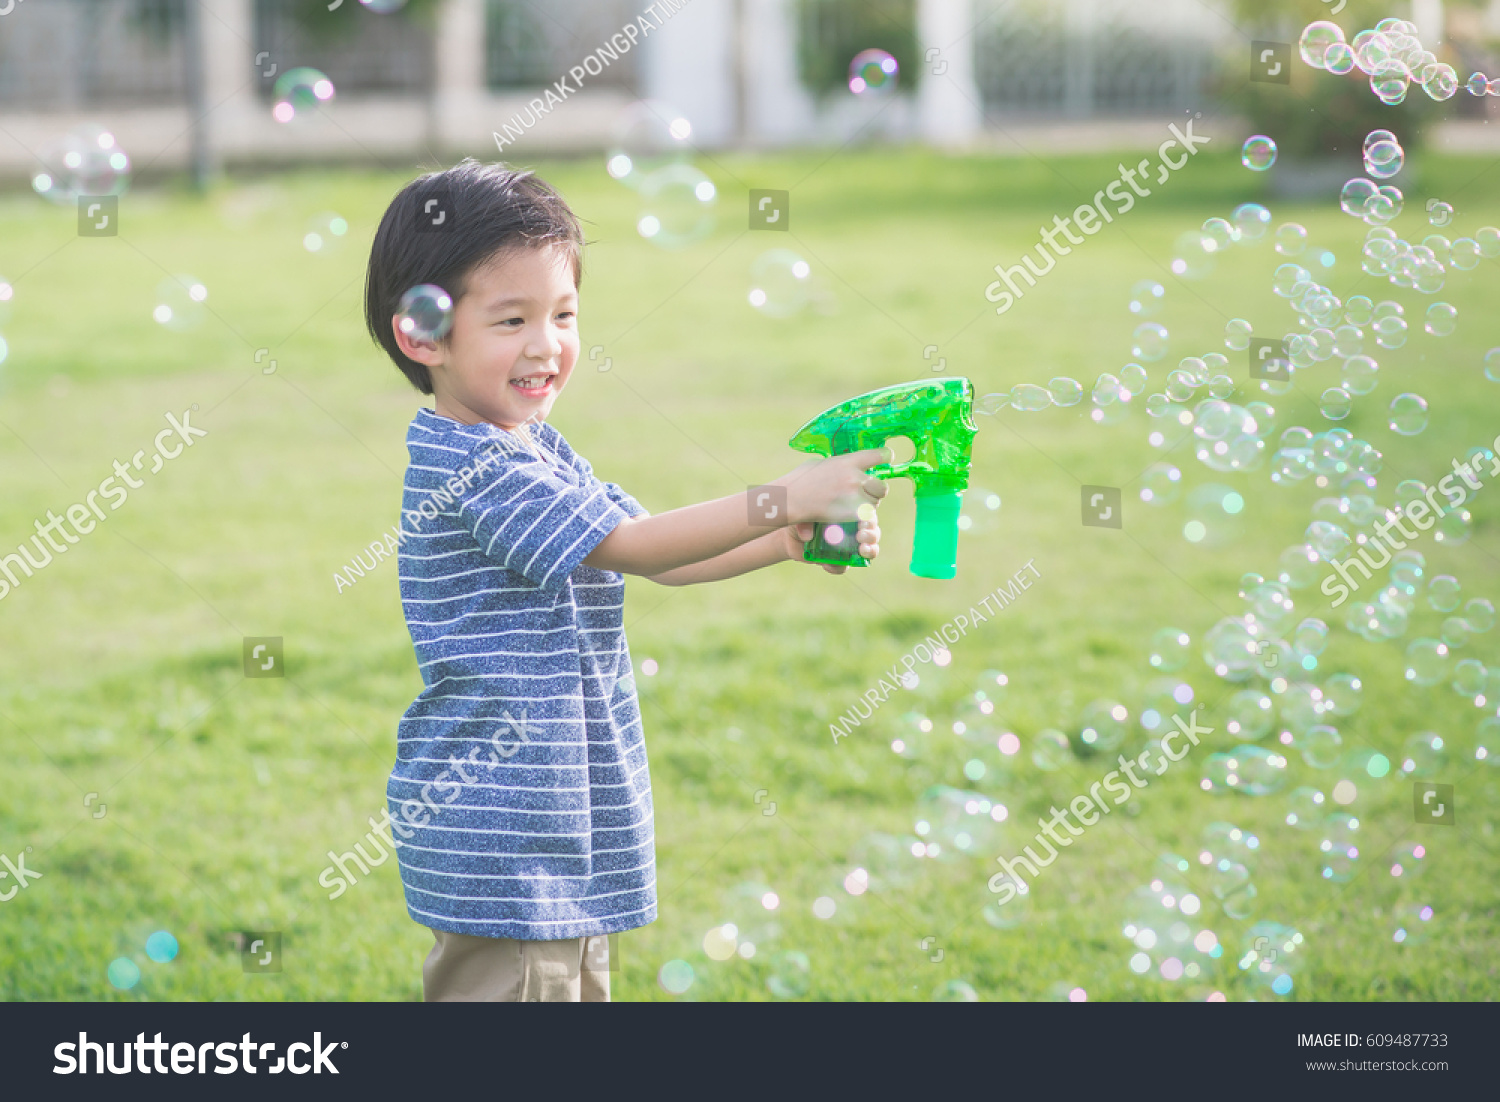 water shooting bubble gun